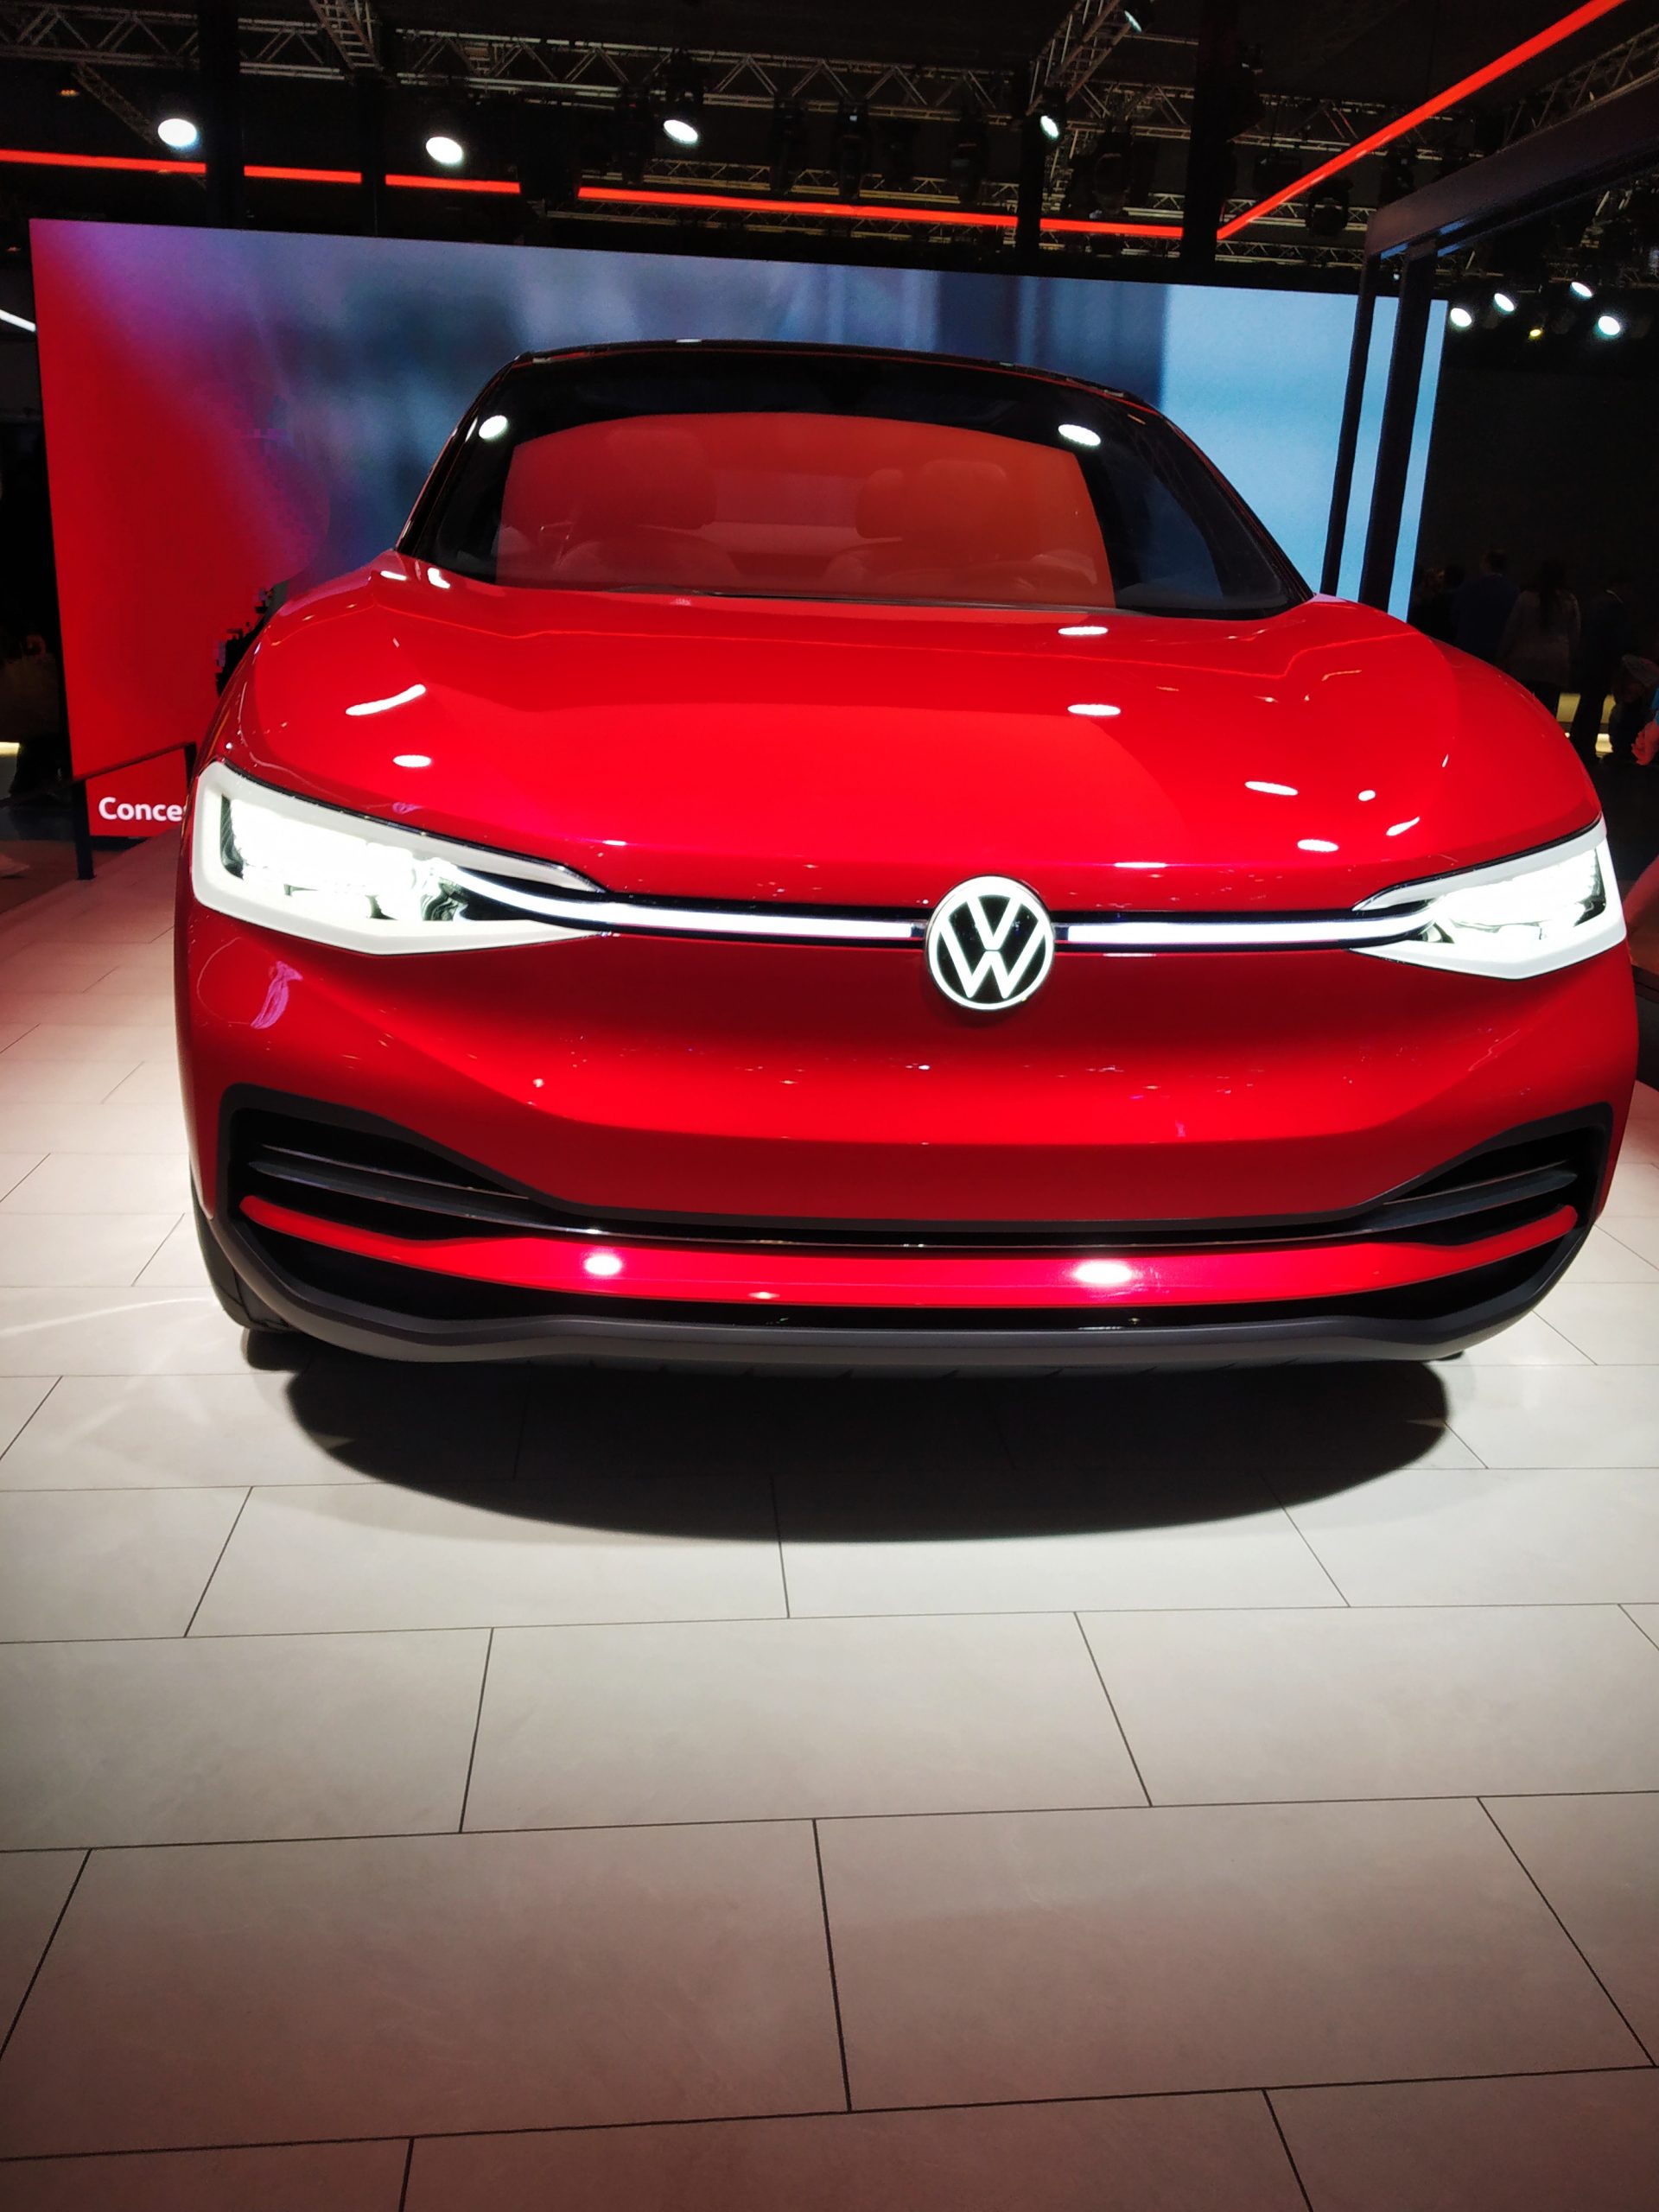 Volkswagen Concept Car